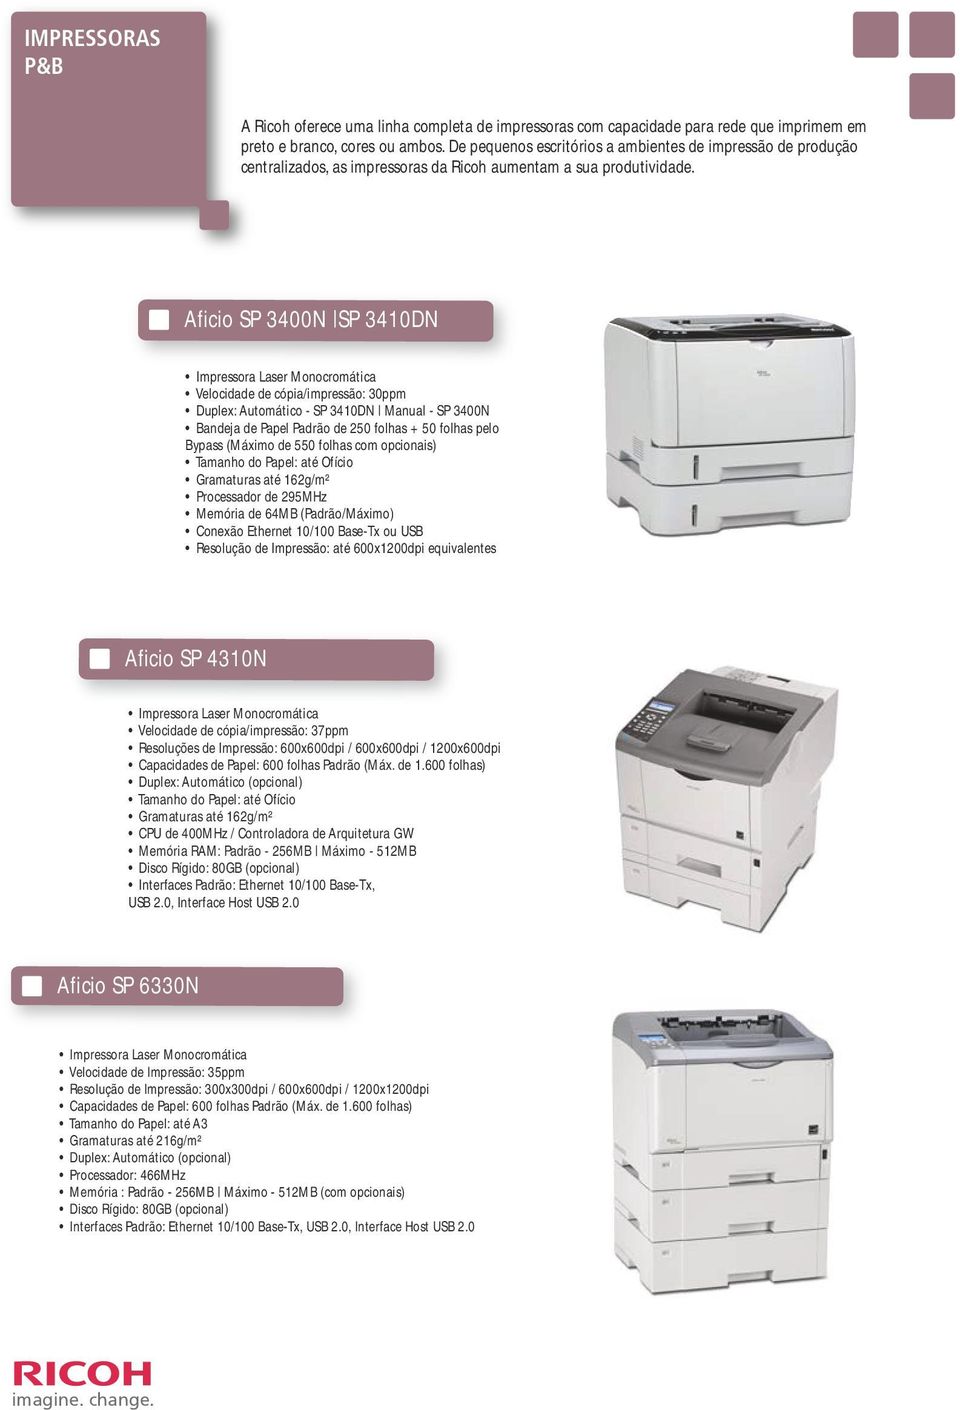 Aficio SP 3400N SP 3410DN Impressora Laser Monocromática Velocidade de cópia/impressão: 30ppm Duplex: Automático - SP 3410DN Manual - SP 3400N Bandeja de Papel Padrão de 250 folhas + 50 folhas pelo